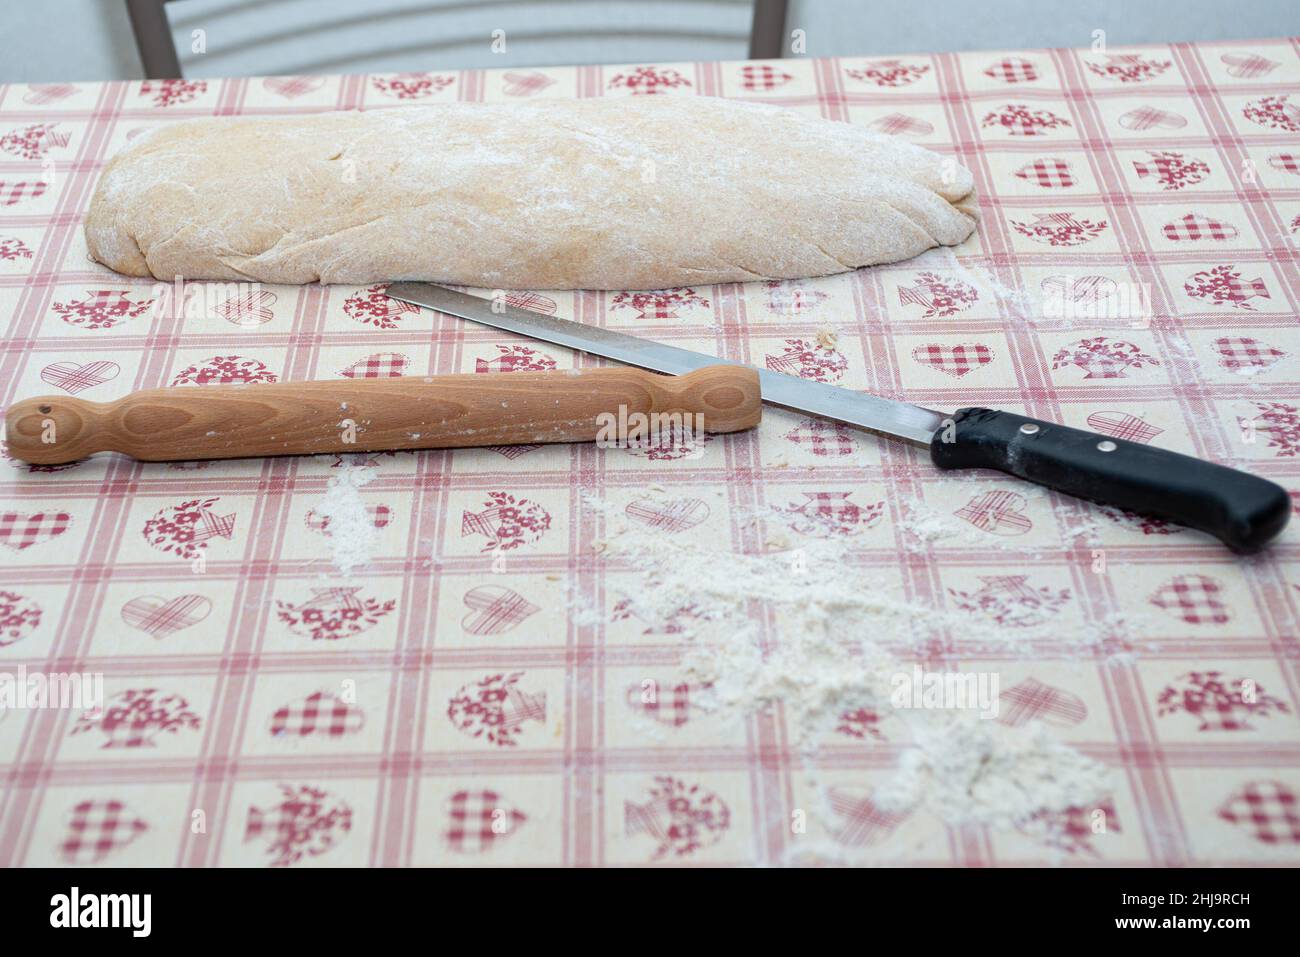 pâte à pizza avec broche à farine et couteau Banque D'Images